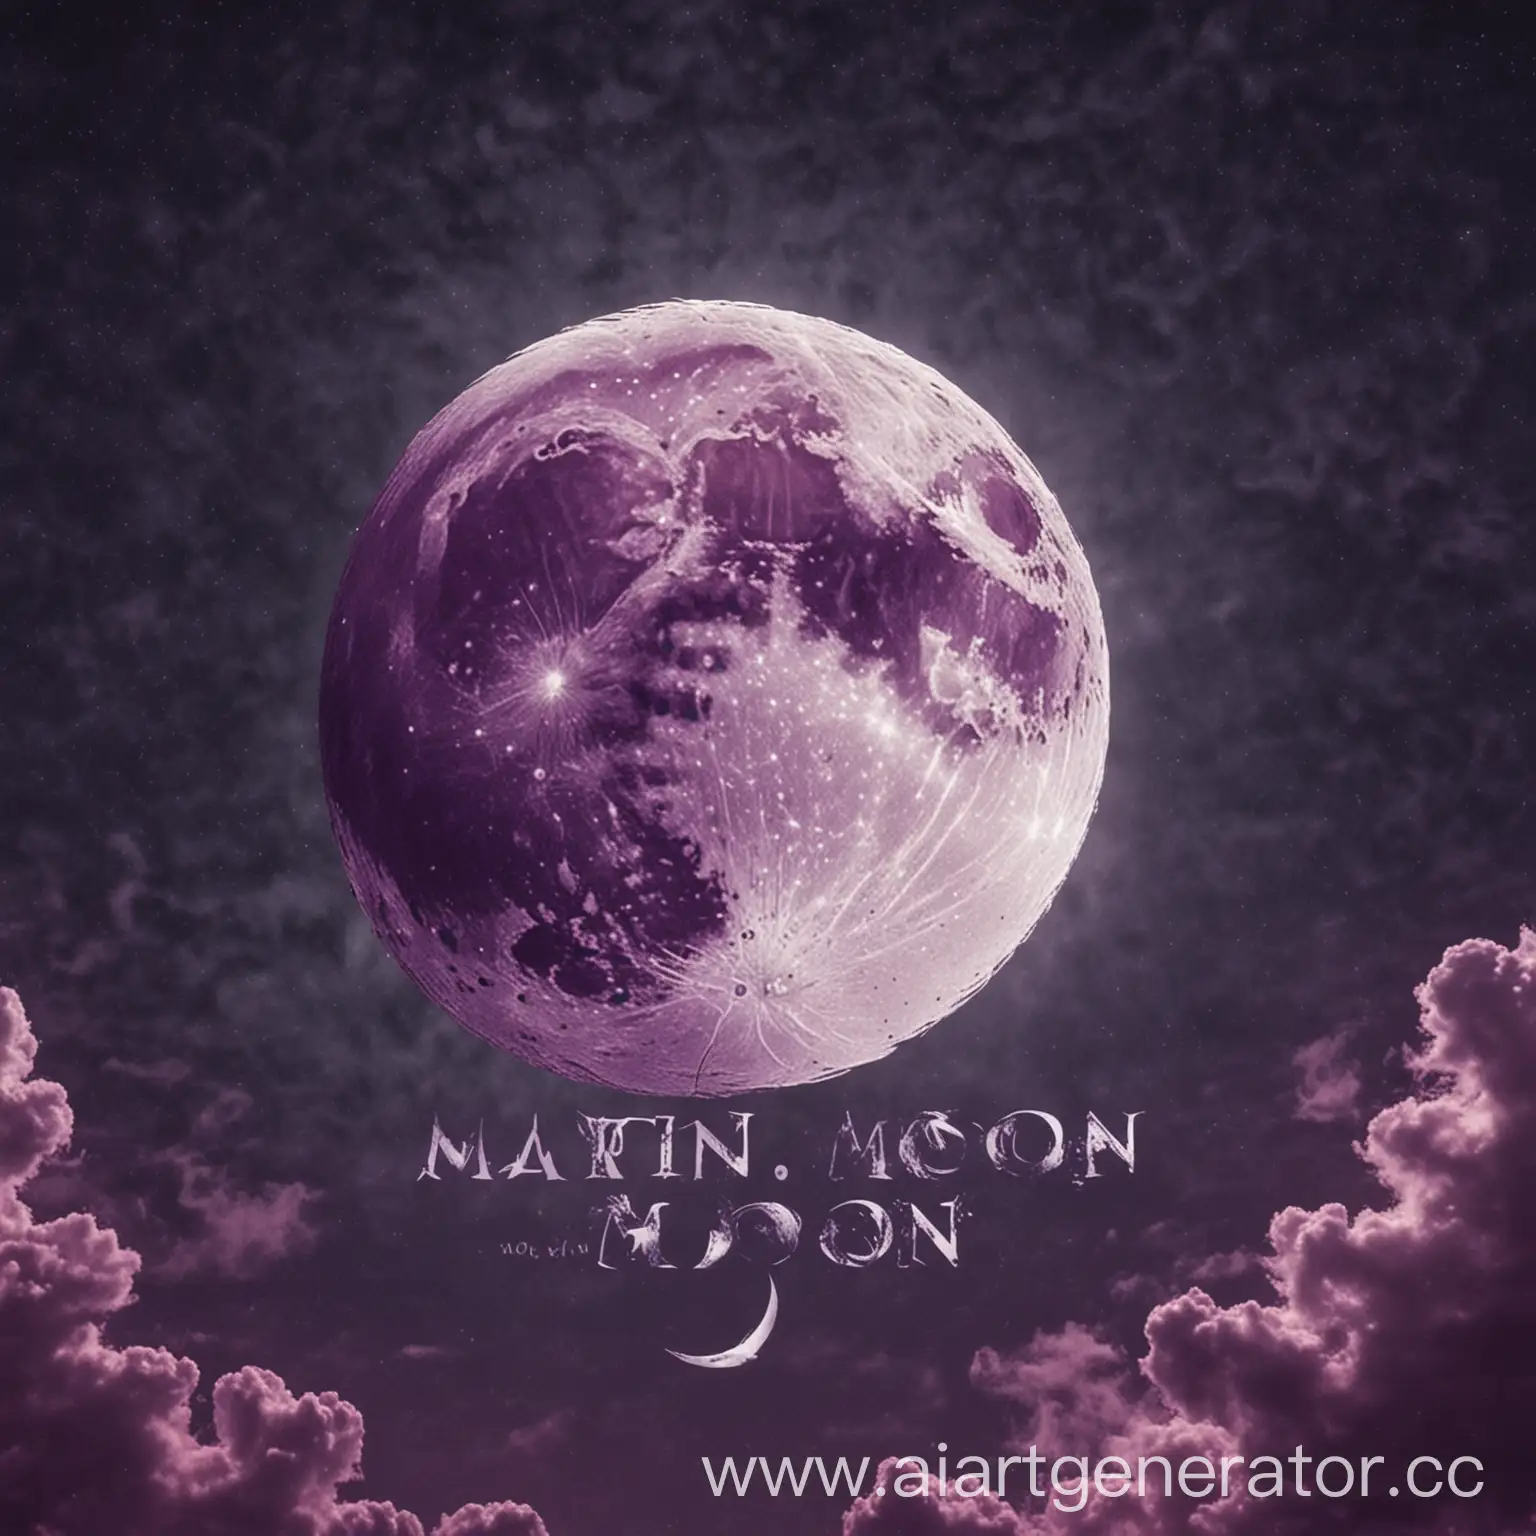 Логотип в сиреневых тонах на небе луна на луне надпись Martin Moon
